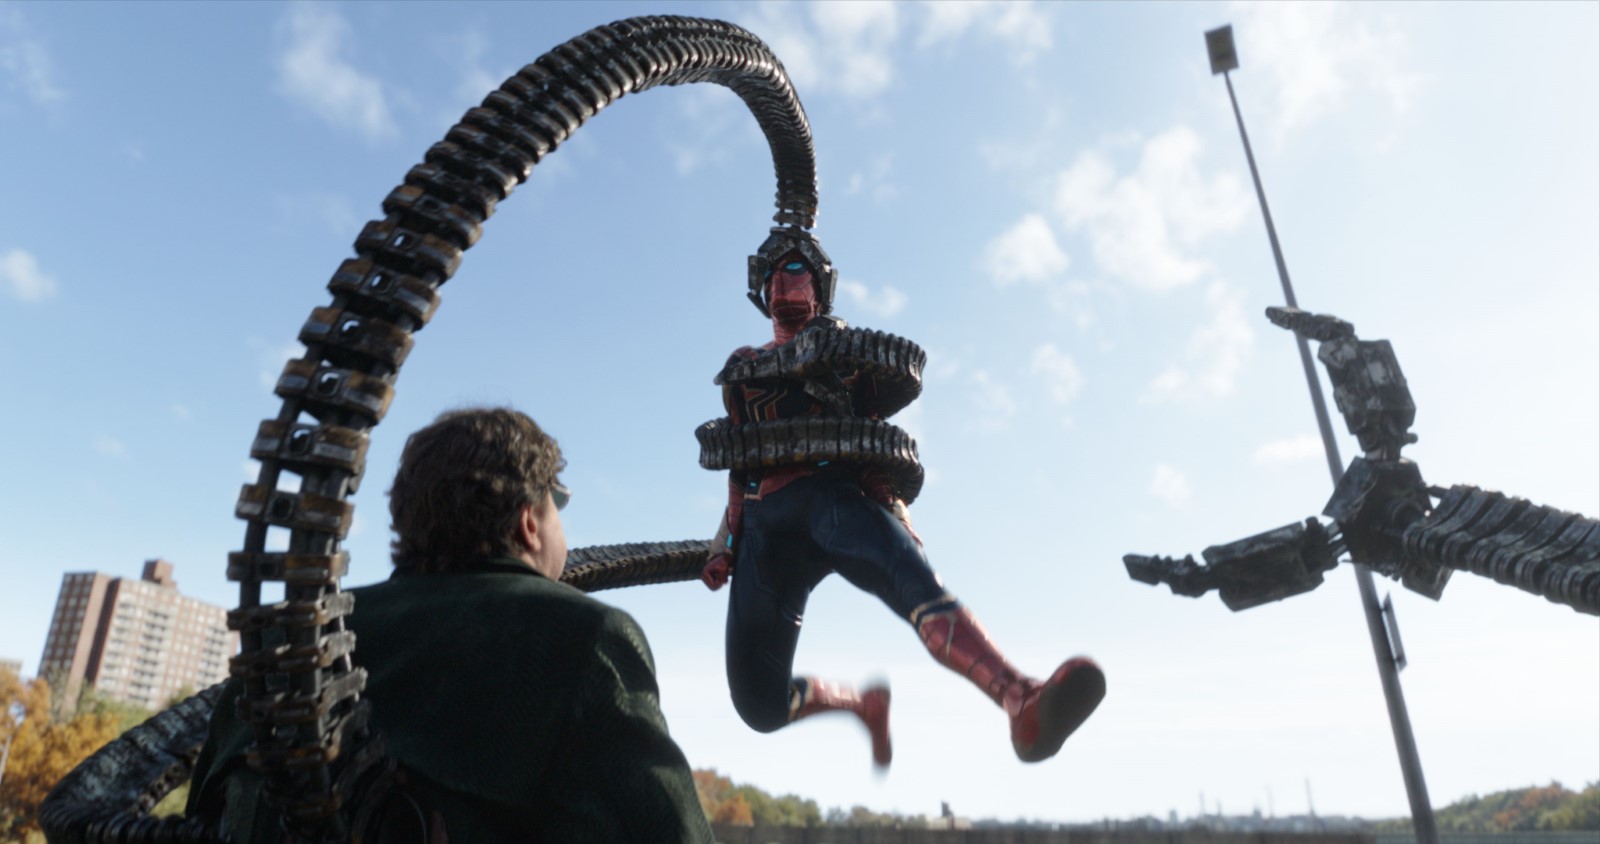 Szenenbild 3 vom Film Spider-Man - No Way home